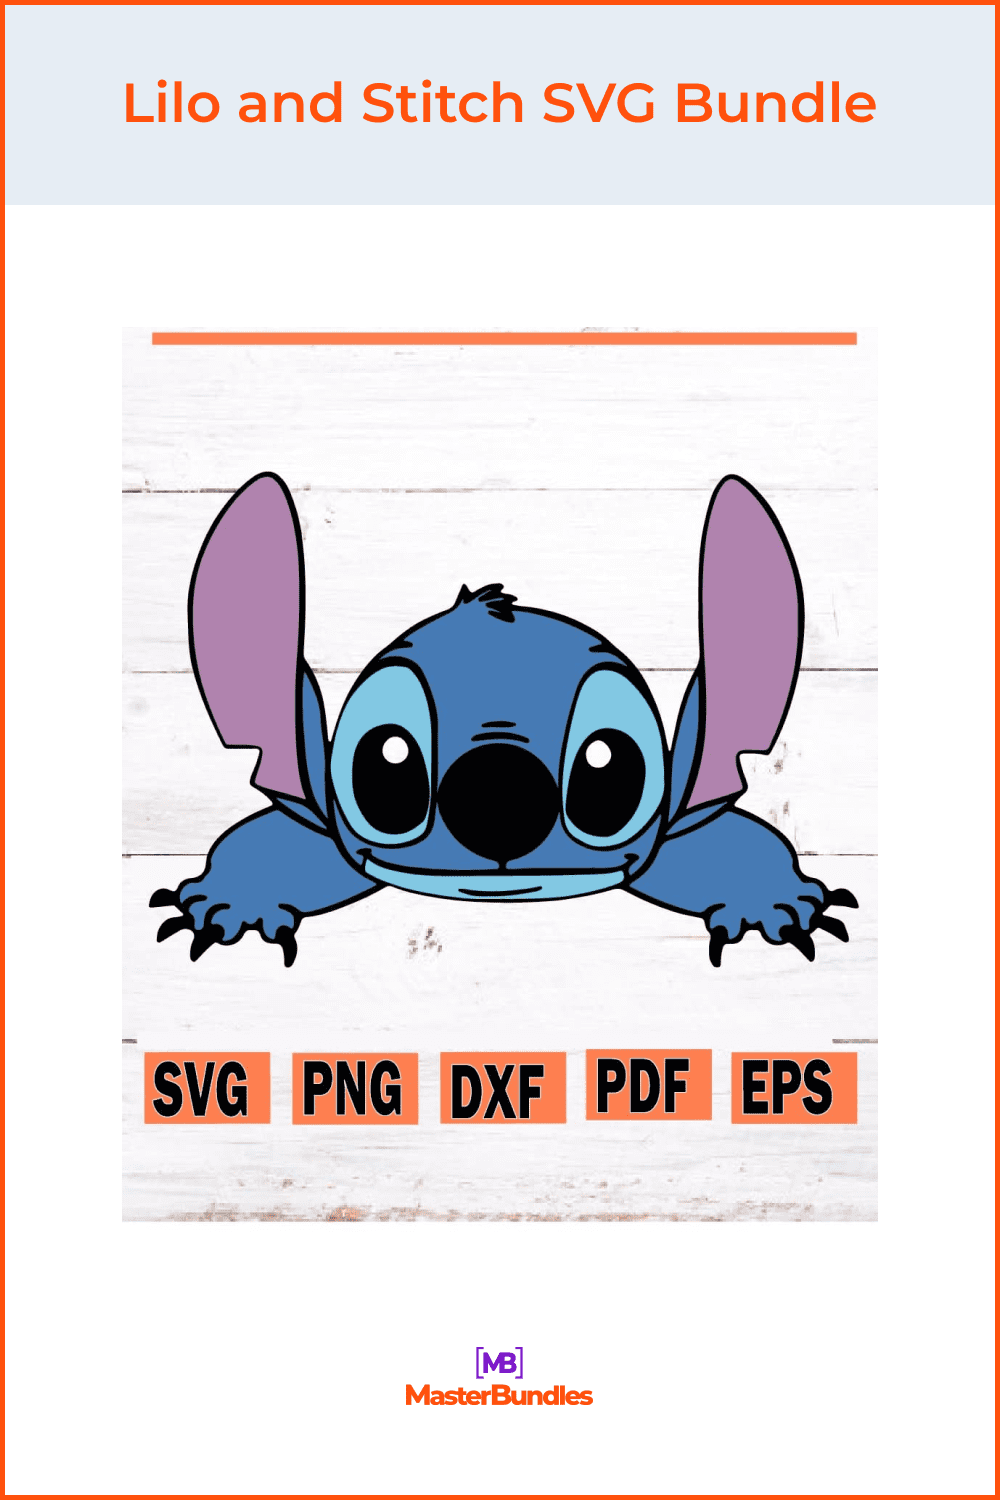 Lilo and Stitch SVG Bundle.